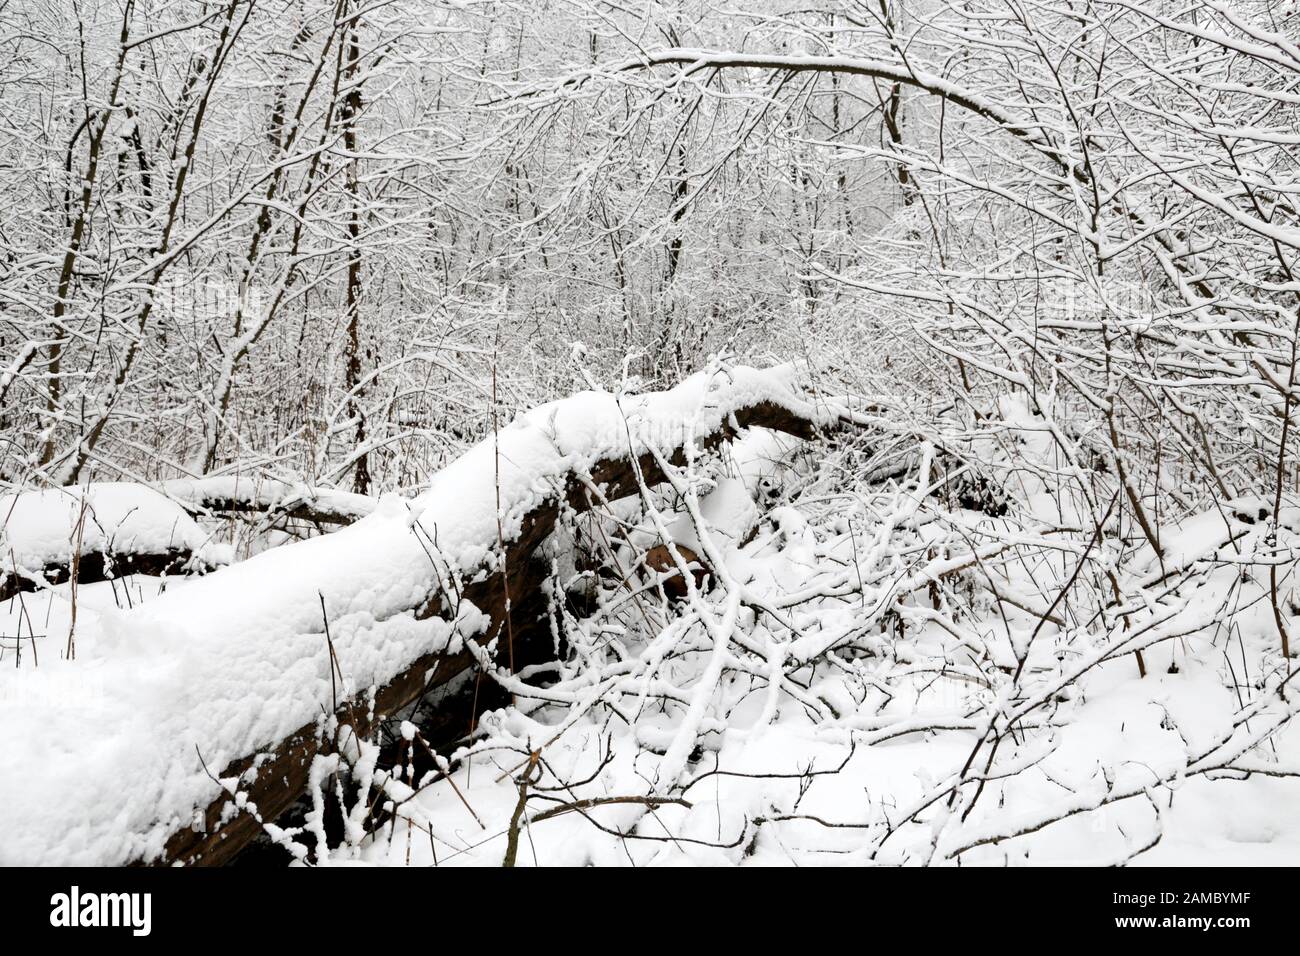 Forêt d'hiver, arbres tombés couverts de neige, vue pittoresque. La nature après la chute de neige, temps froid Banque D'Images